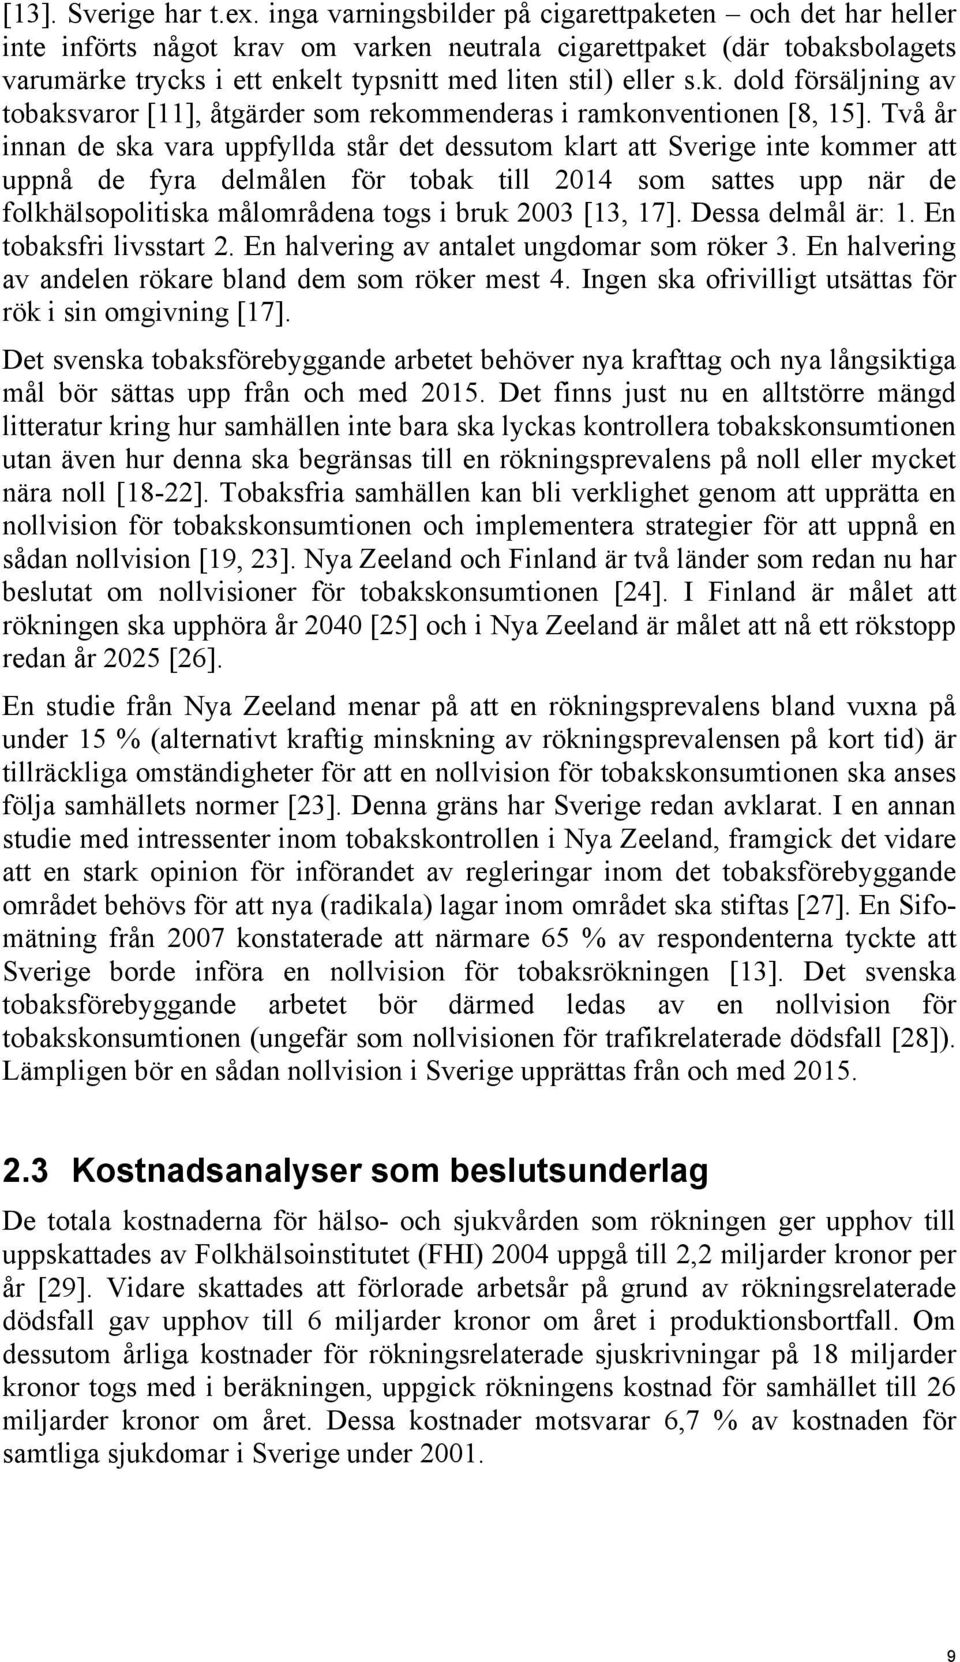 Två år innan de ska vara uppfyllda står det dessutom klart att Sverige inte kommer att uppnå de fyra delmålen för tobak till 2014 som sattes upp när de folkhälsopolitiska målområdena togs i bruk 2003